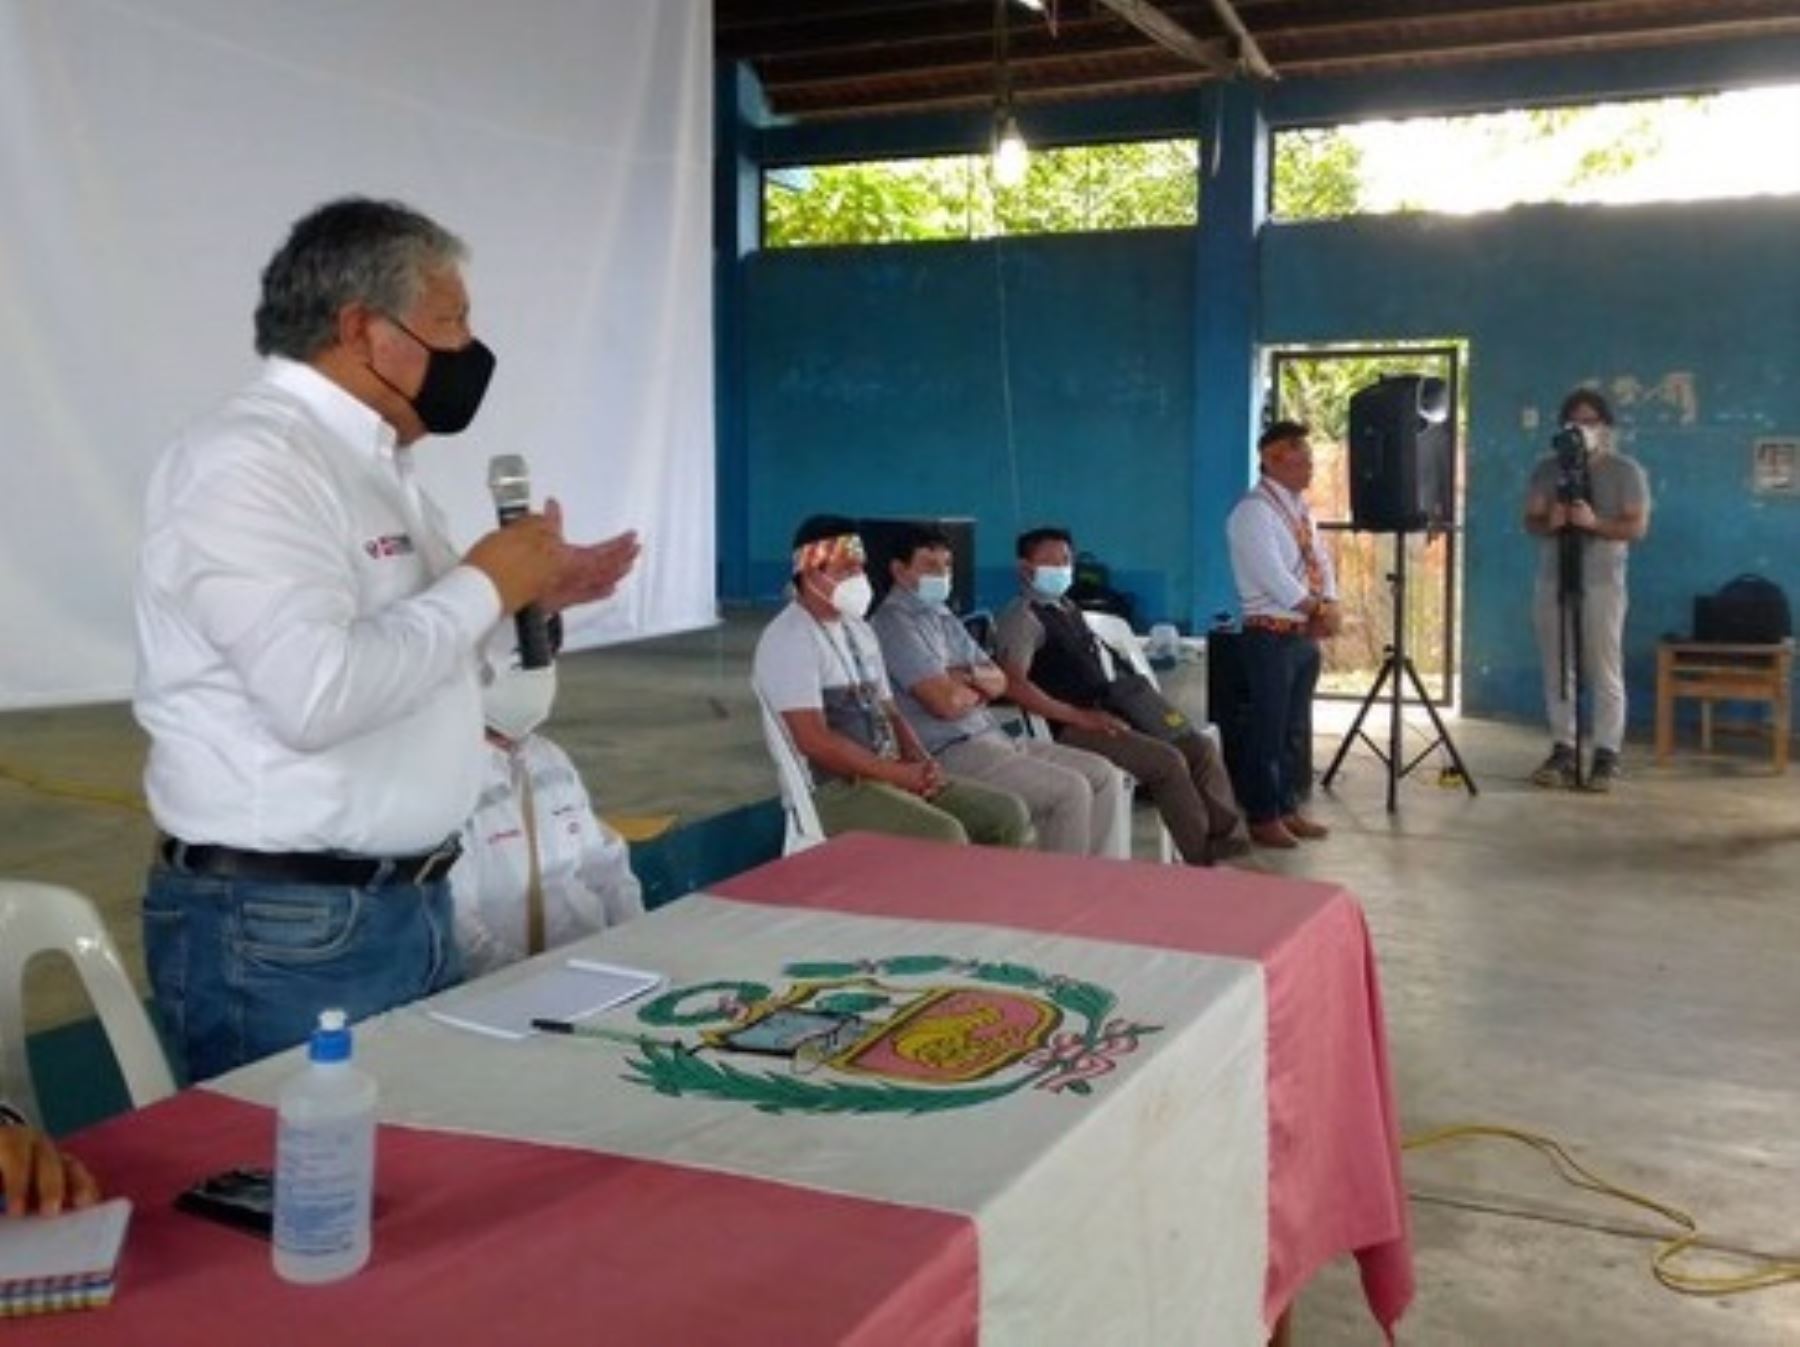 El Ministerio de Energía y Minas destacó los avances en el proceso de consulta previa del Lote 192, ubicado en la provincia de Datem del Marañón, en Loreto. ANDINA/Difusión